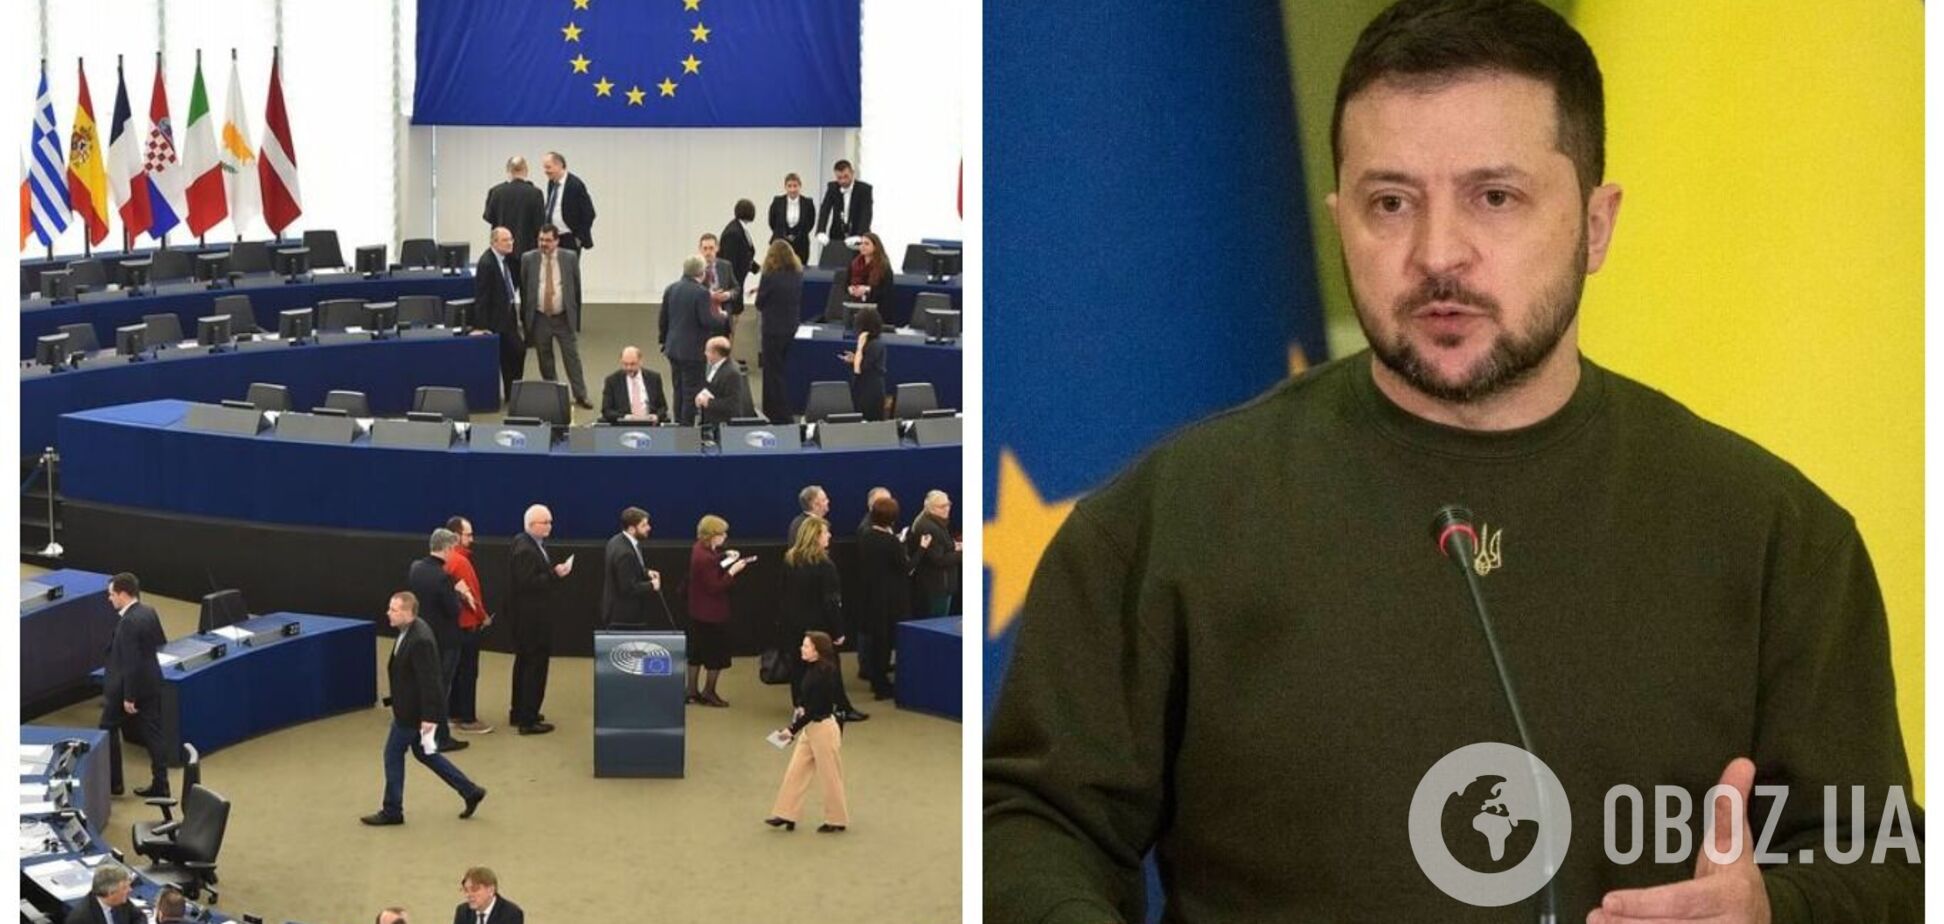 Зеленський розпочав виступ у Європарламенті, у будівлі прозвучав  гімн України. Фото, відео і всі подробиці